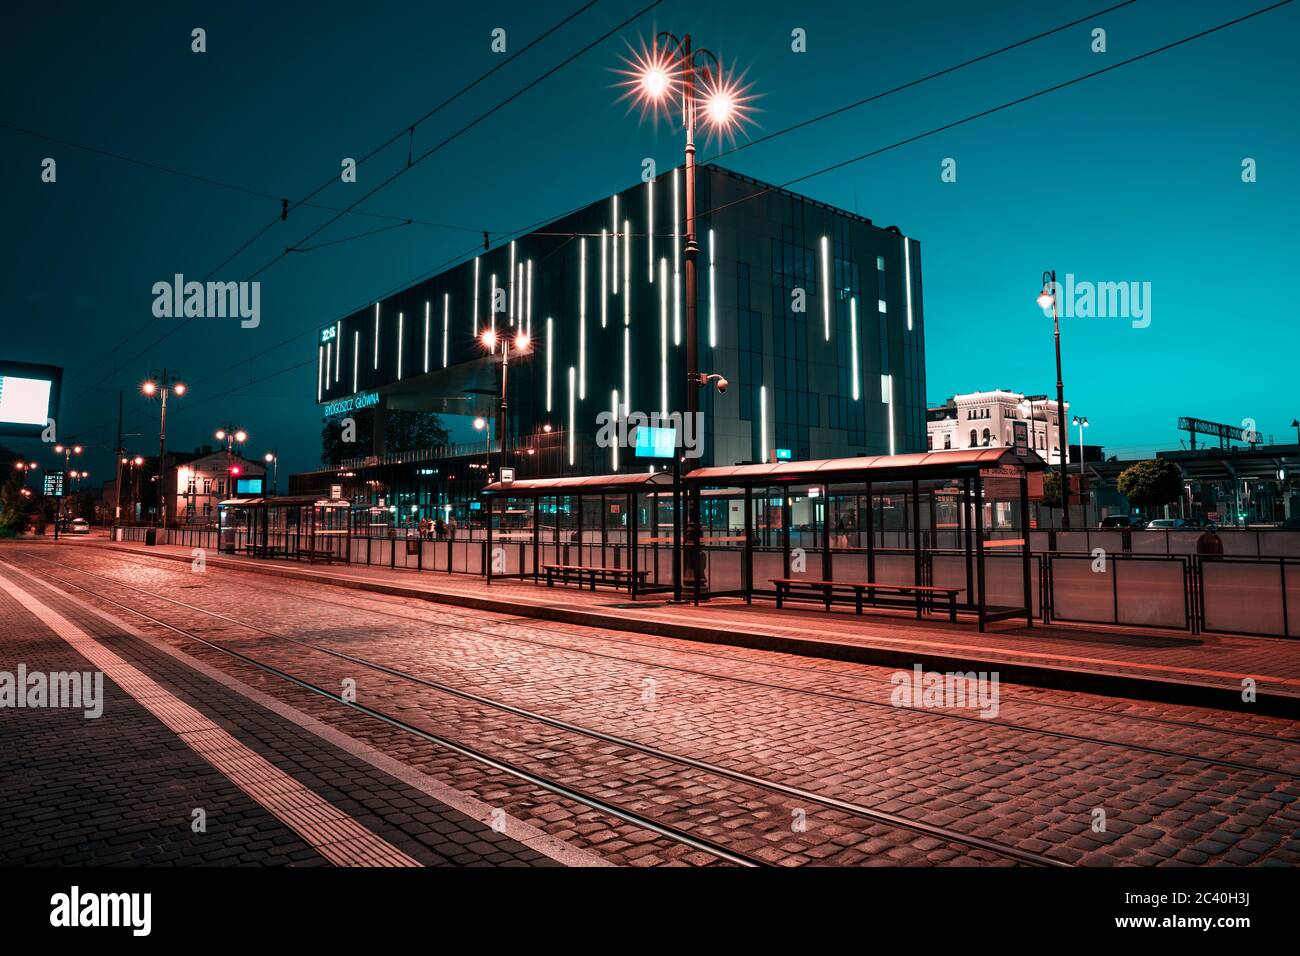 Gare principale de Bydgoszcz après le coucher du soleil. Heure bleue. Gare de Moder éclairée par les lumières de la ville. Banque D'Images